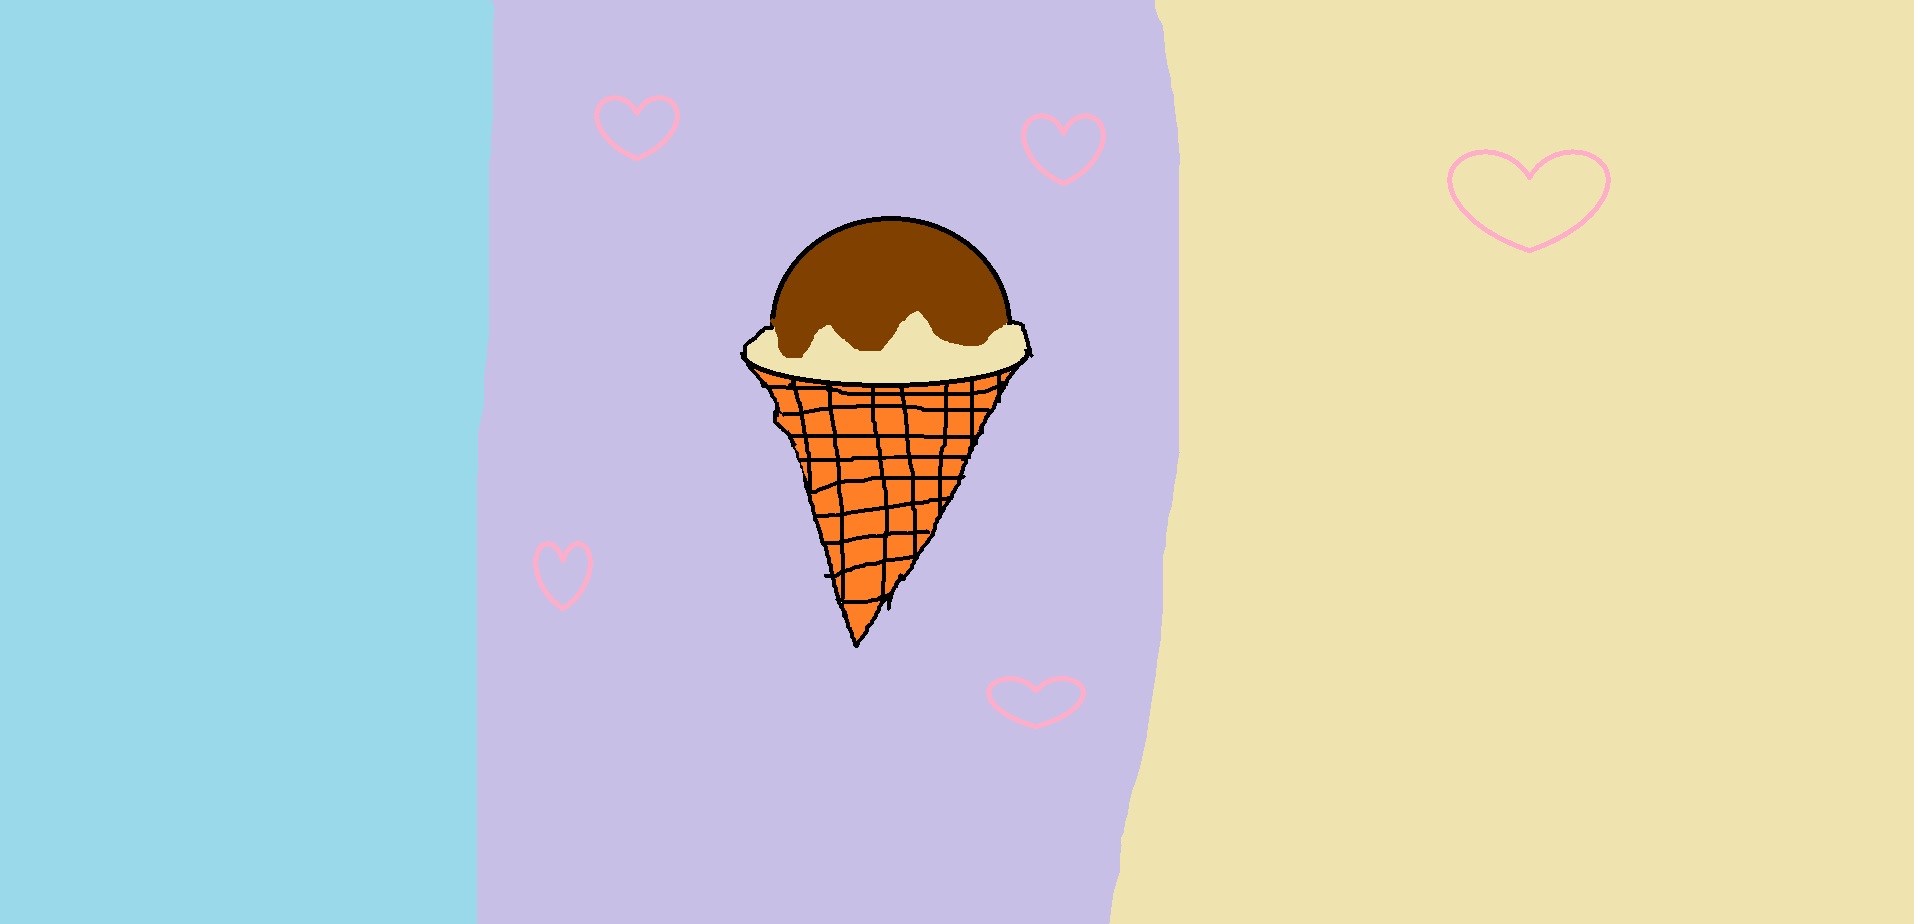 아이스크림.jpg